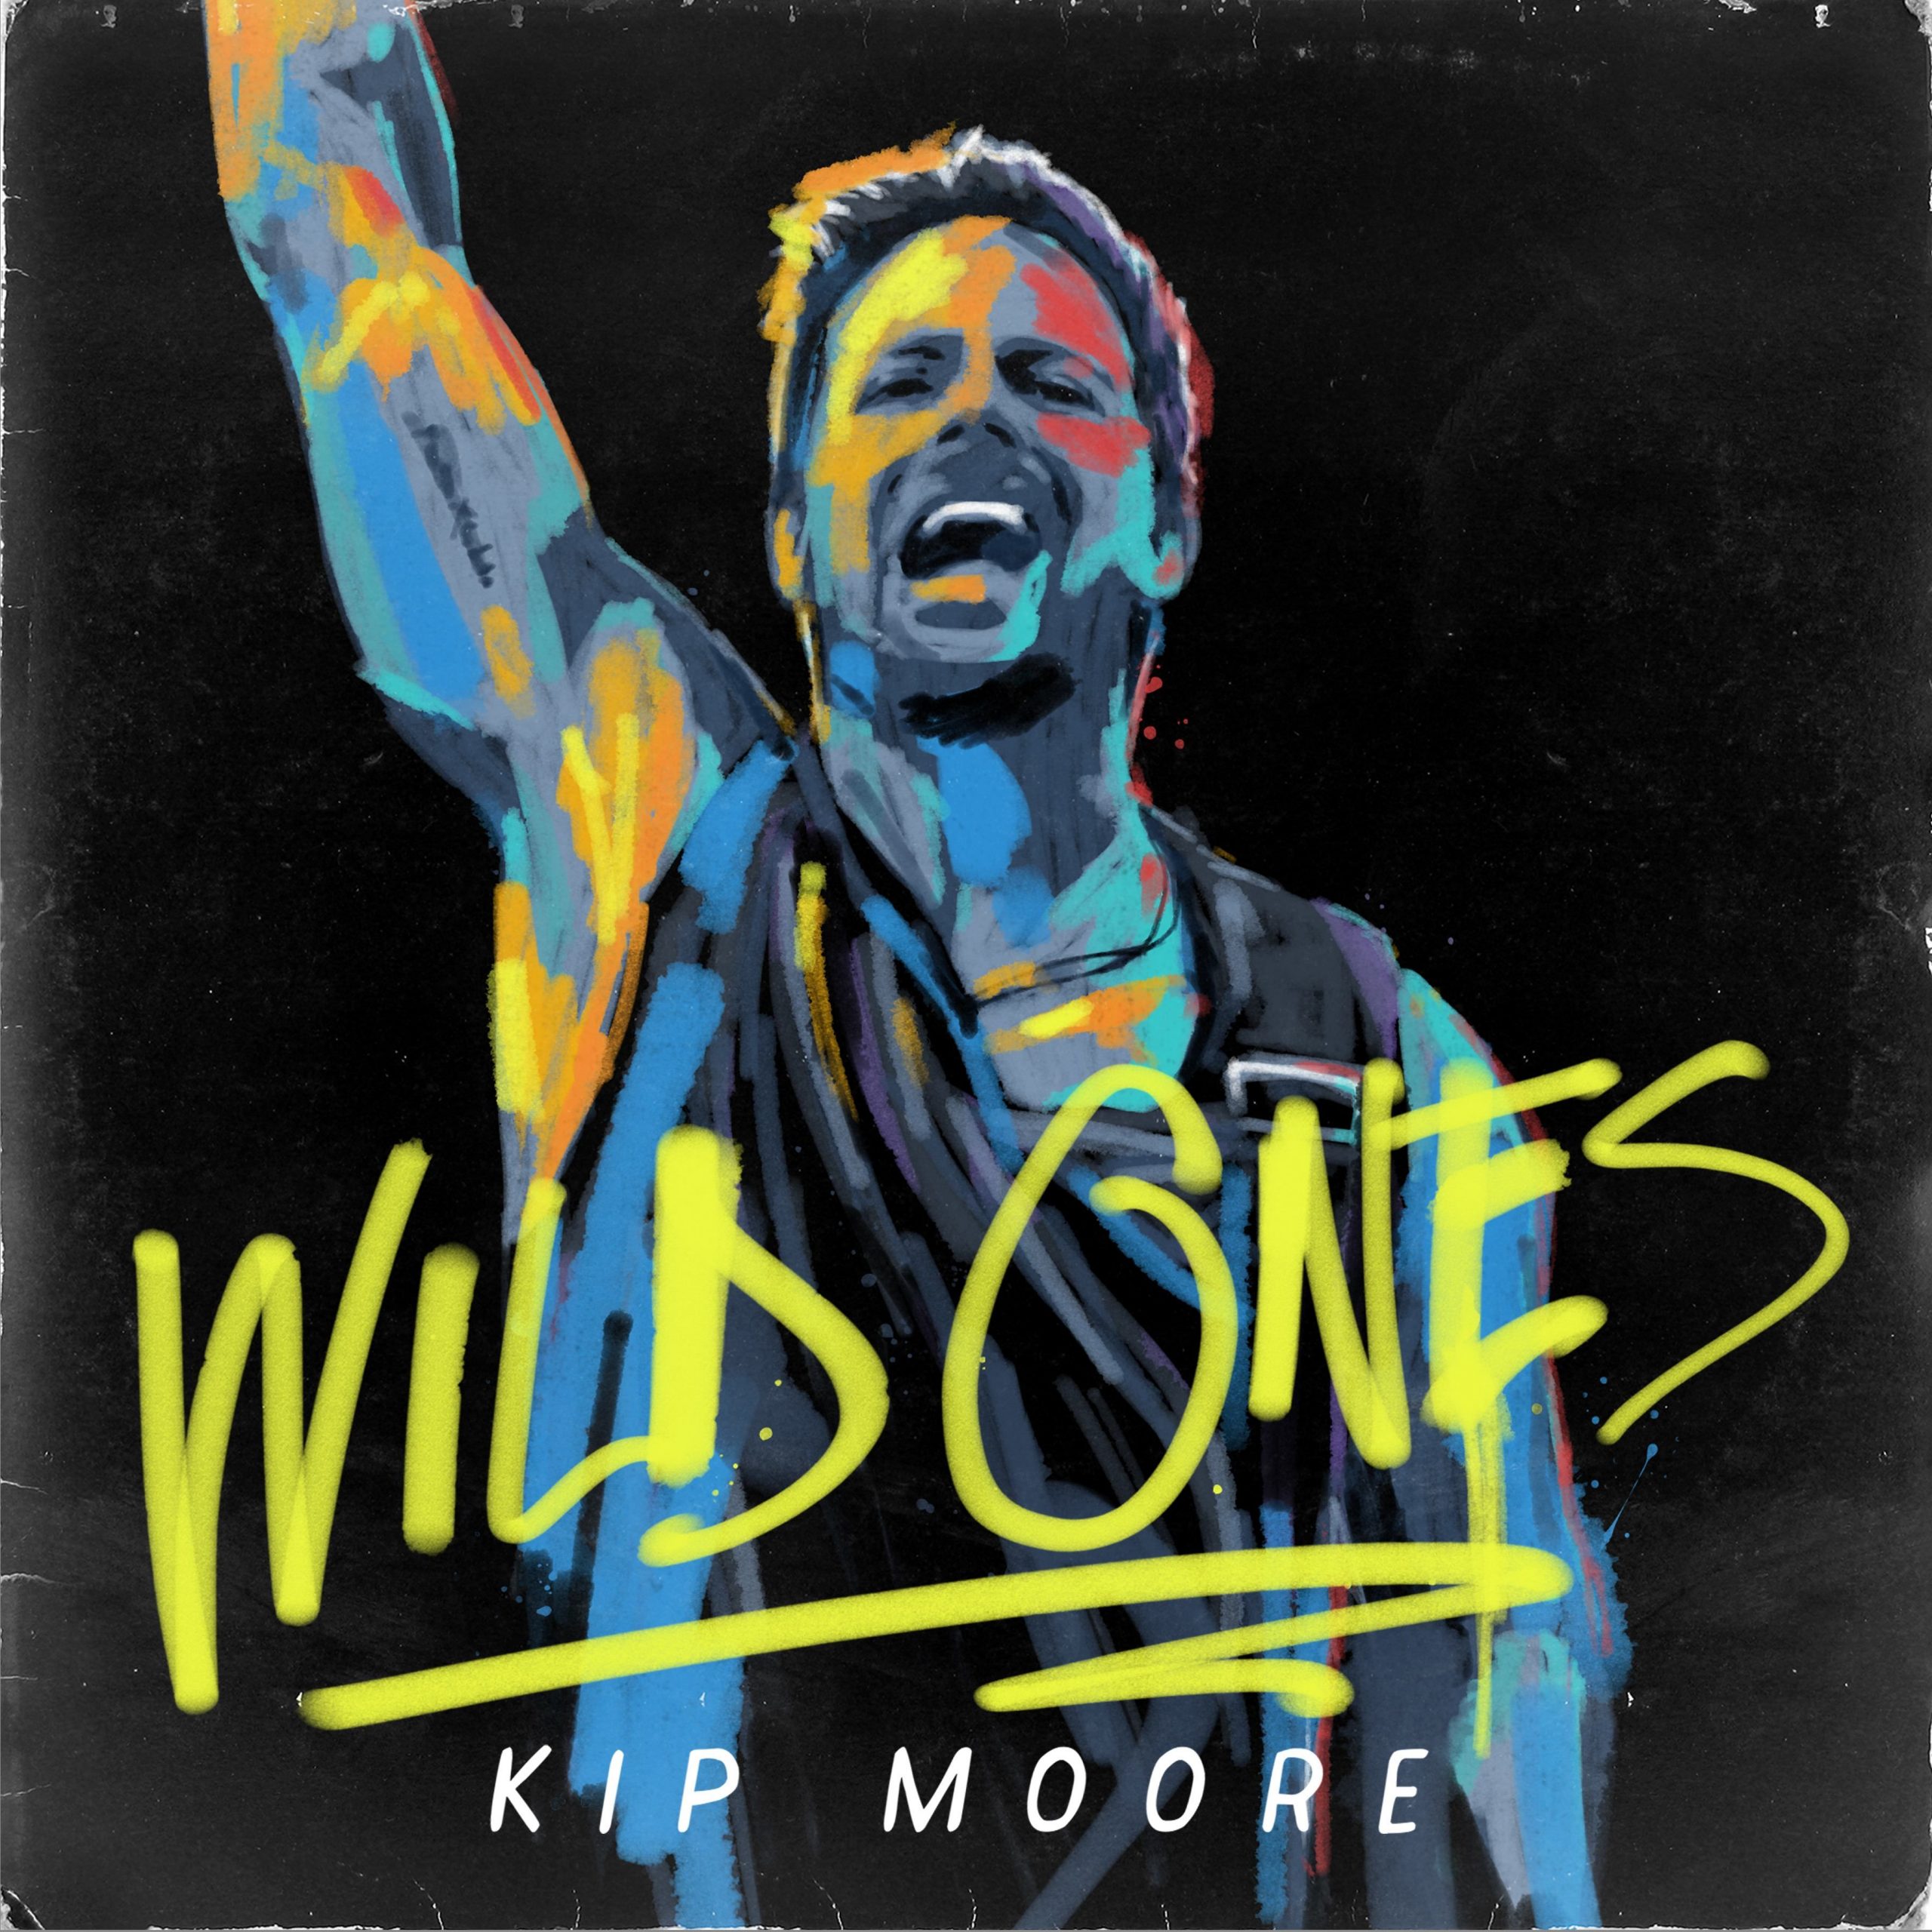 Kip Moore Releases New Album “Wild Ones”